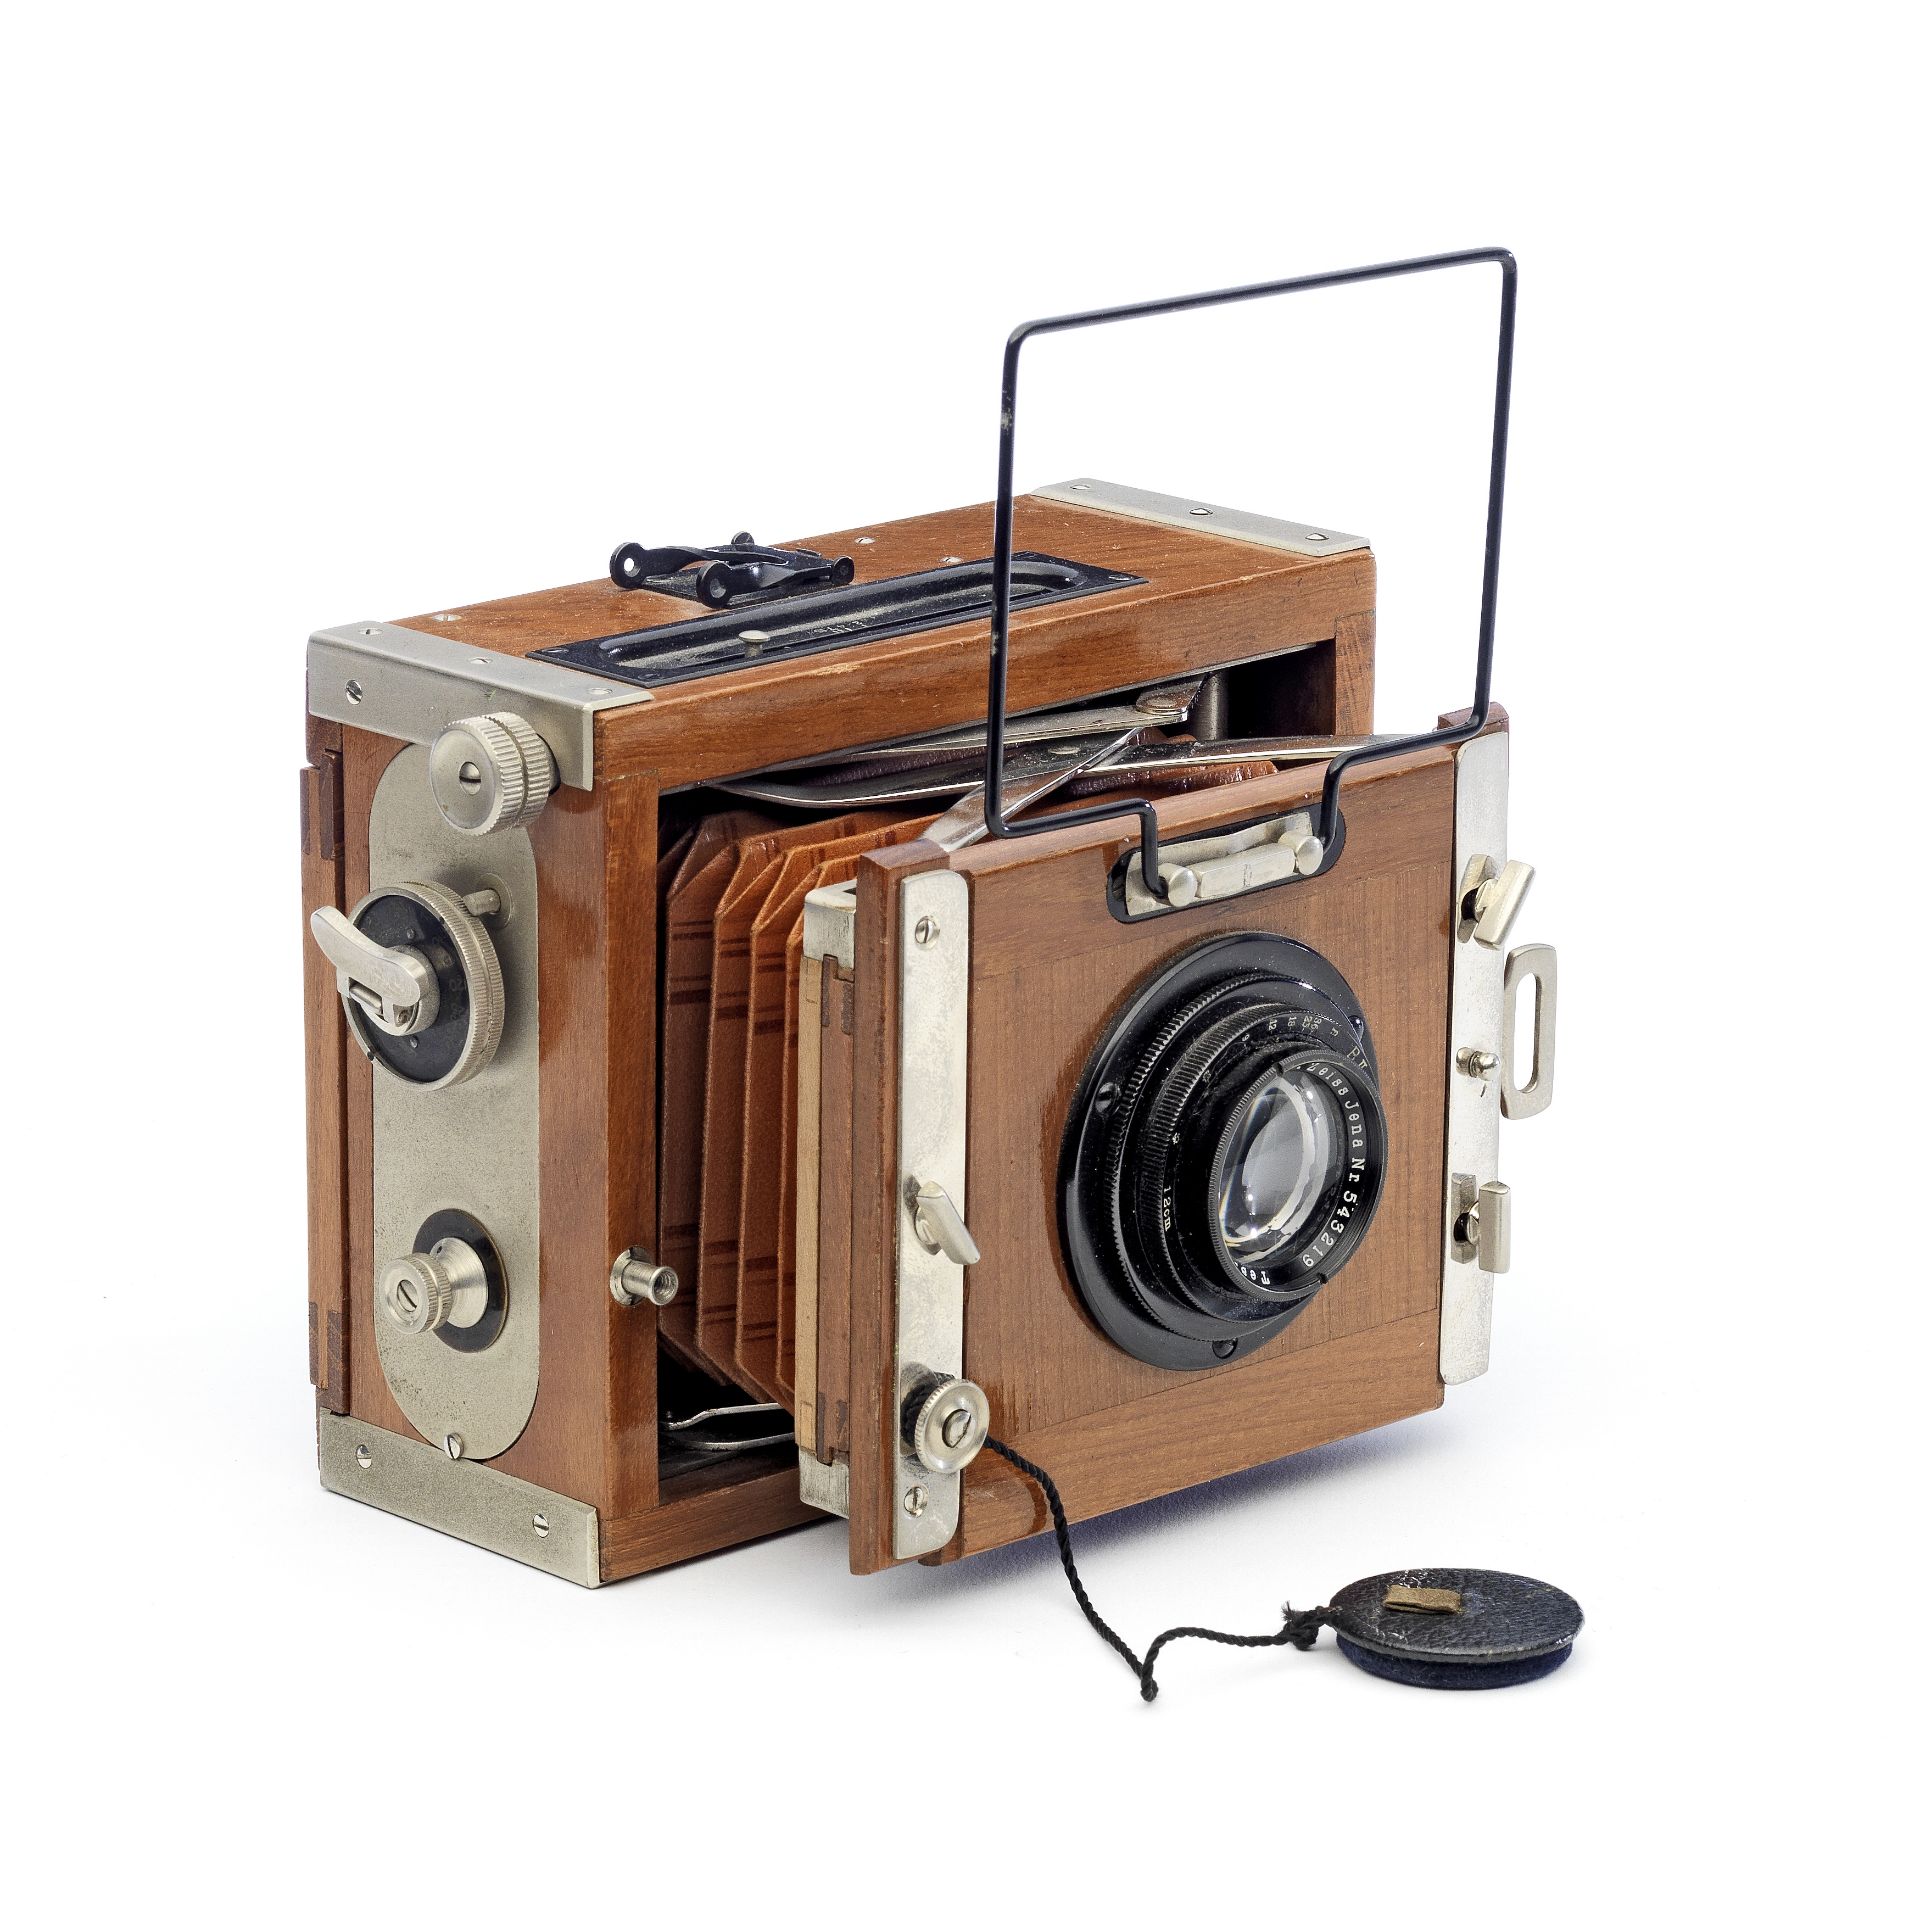 A Contessa-Nettel Tropical Deck-Rullo Camera,